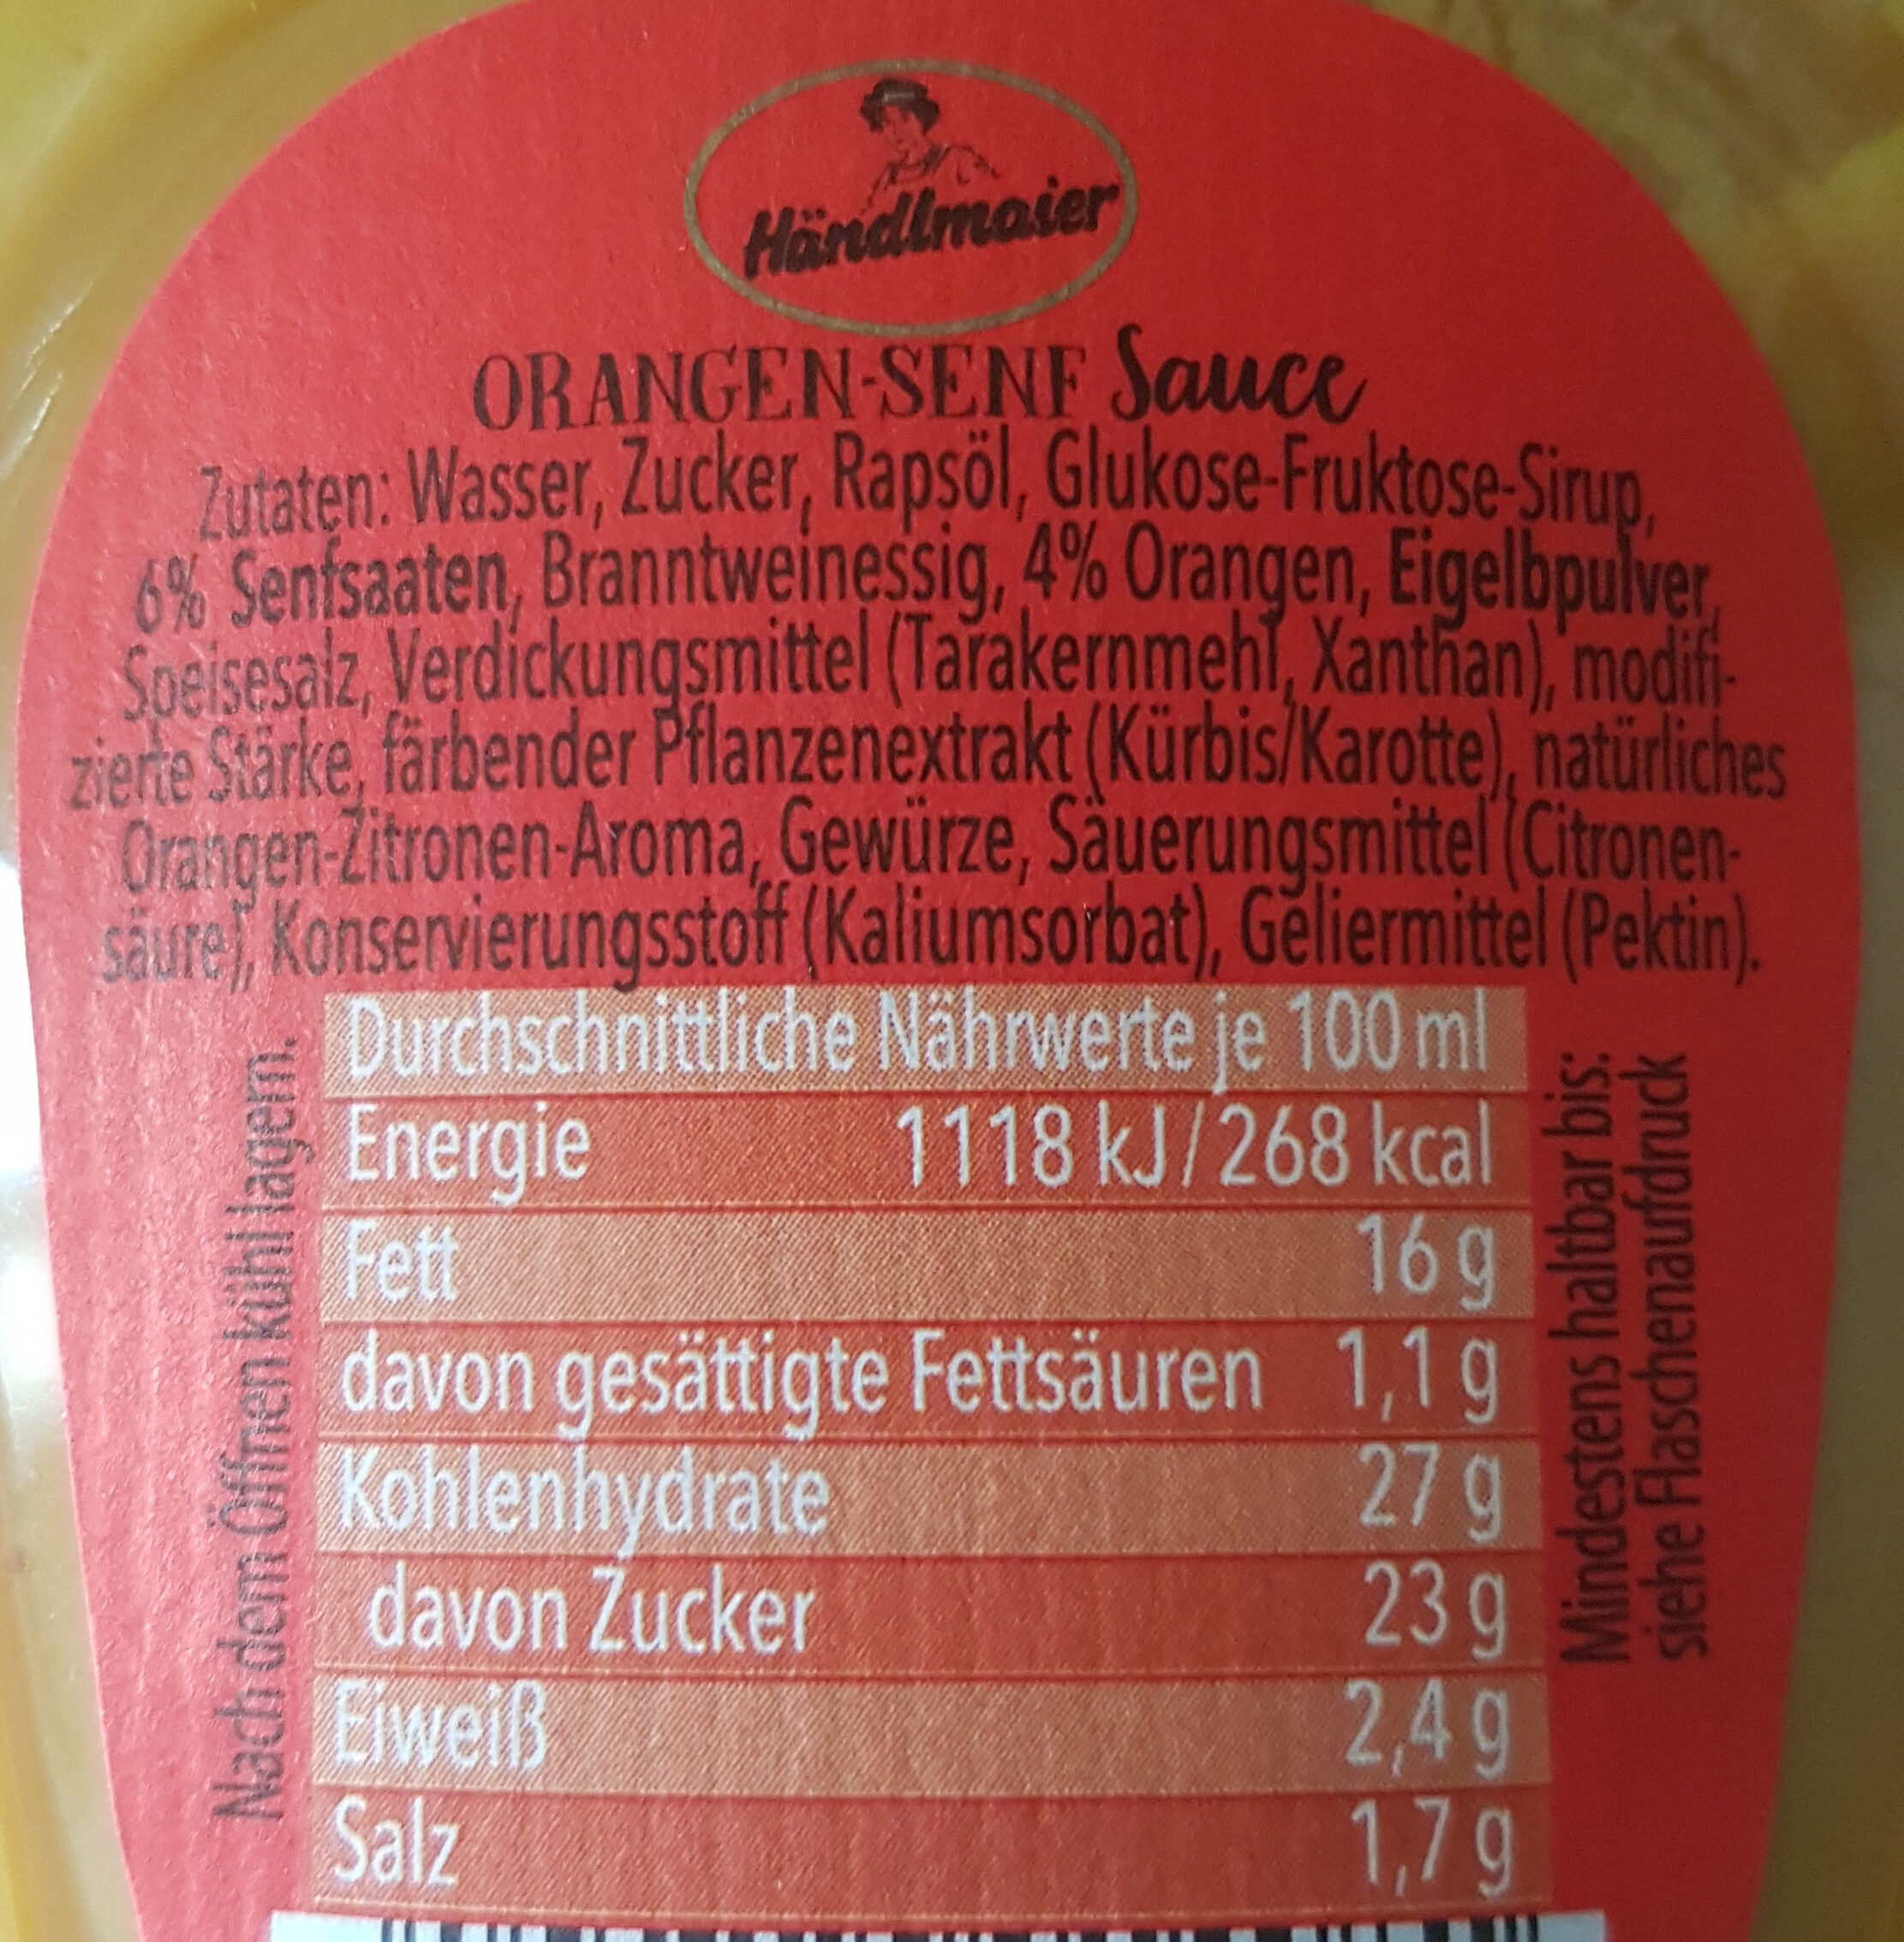 Orangen-Senf-Sauce - Ingredients - de